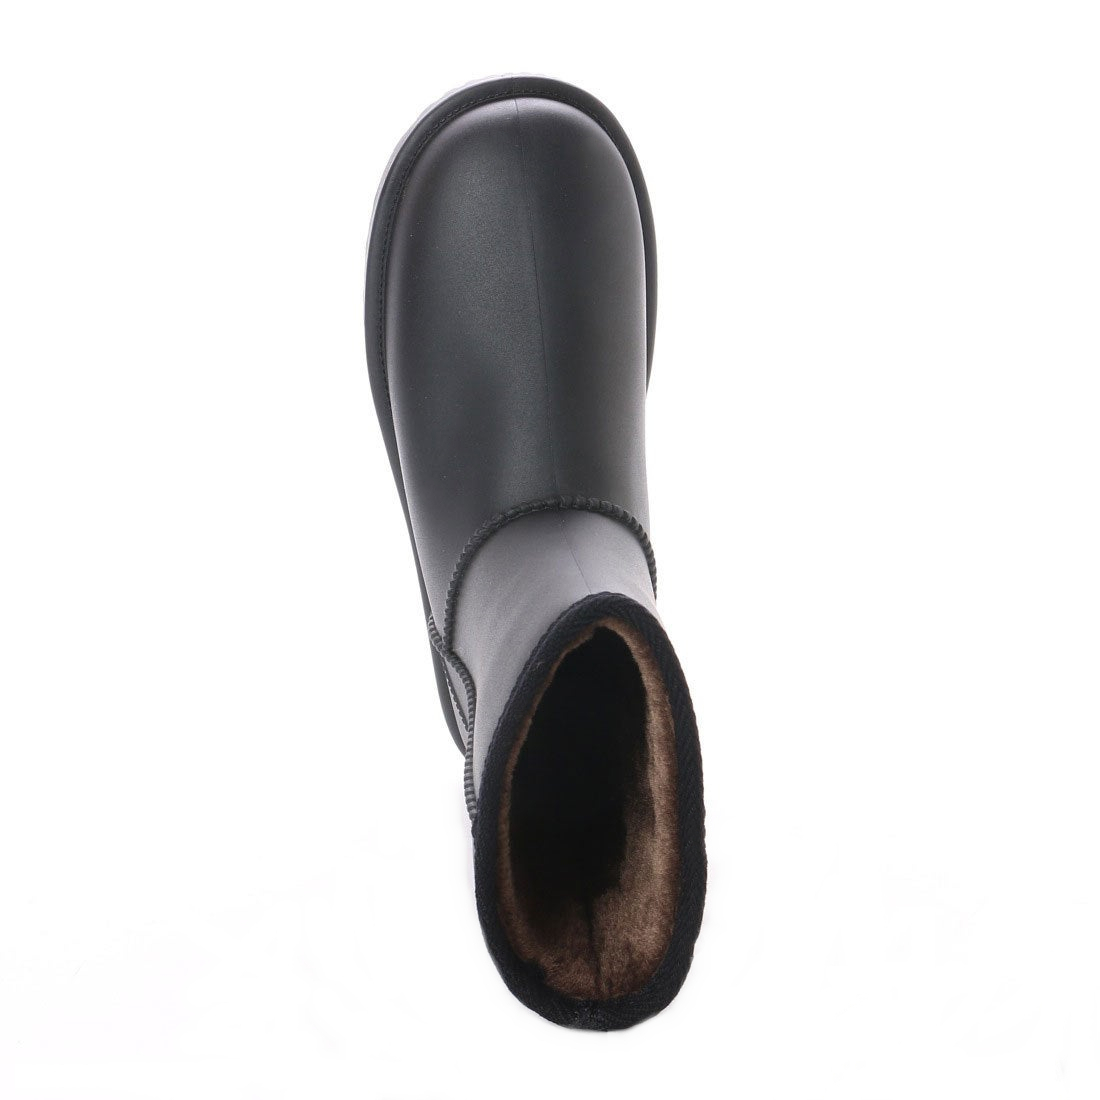 * новый товар * популярный *[21076_22.0 cm] для мужчин и женщин мутон ботинки 100% совершенно водонепроницаемый гарантия . дождь двоякое применение подкладка все боа имеется Family размер :17.0~28.0